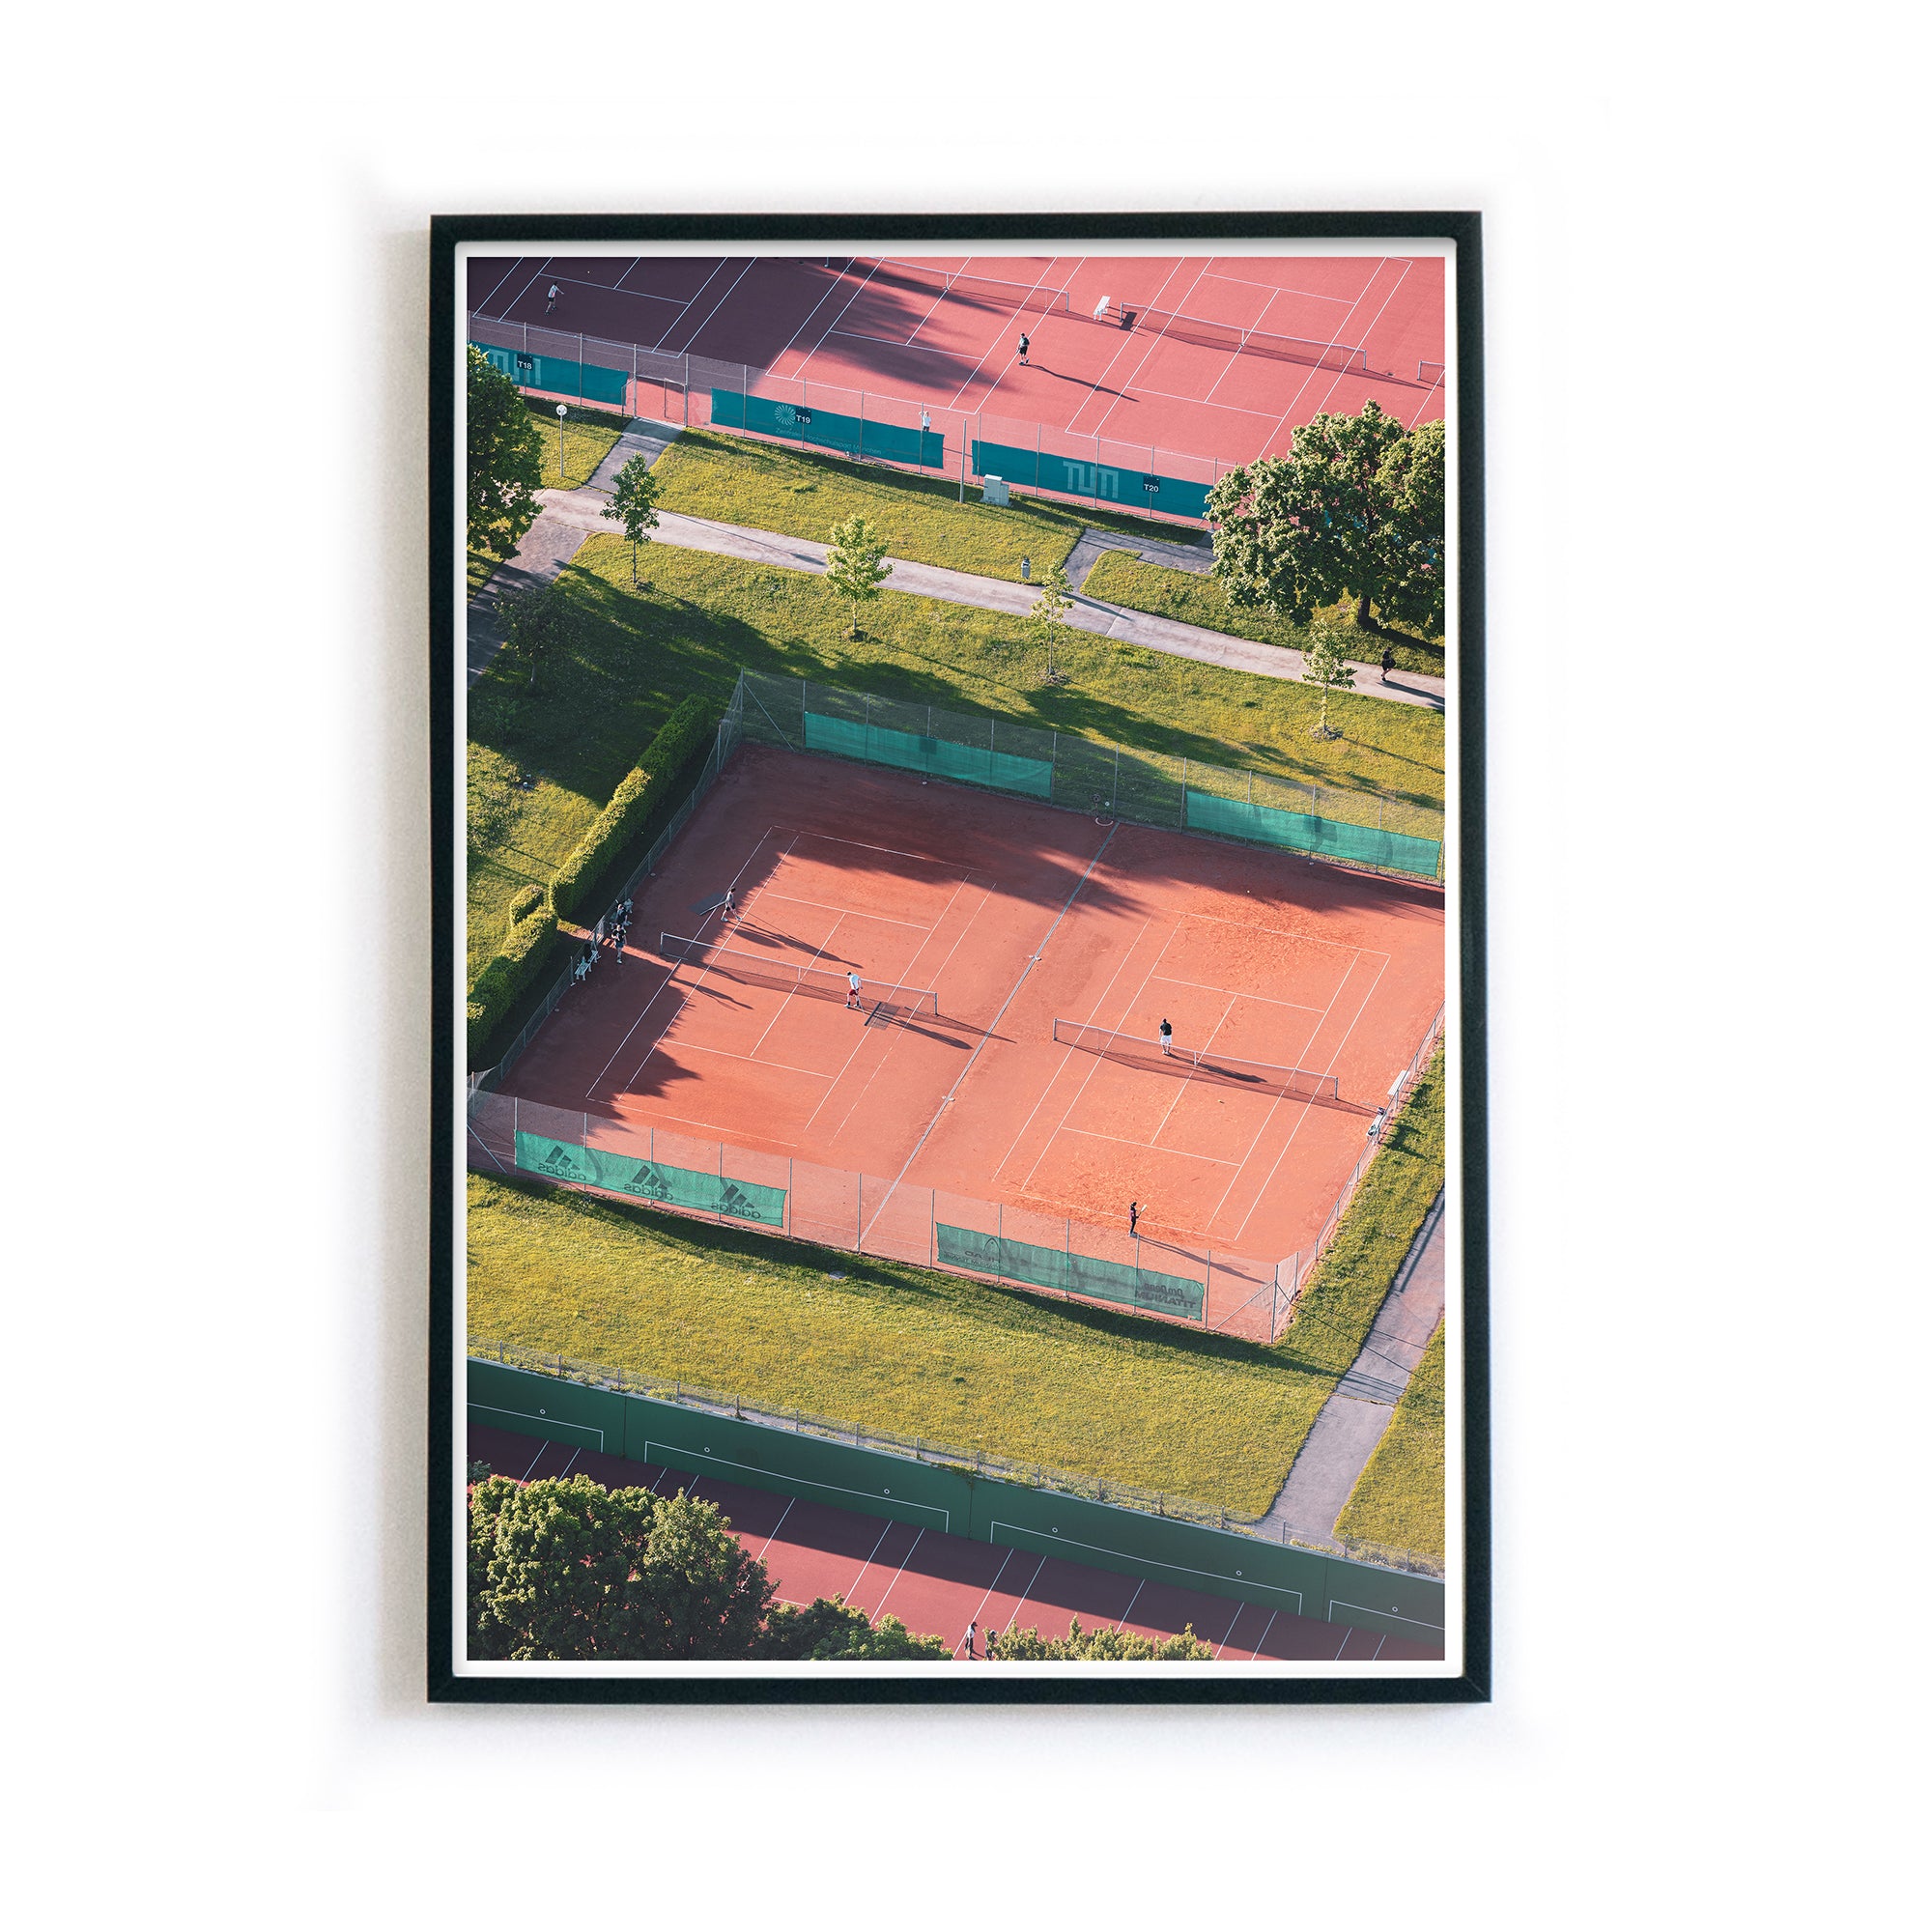 4one-pictures-muenchen-poster-munich-bild-tennis-sport-oben-retro-playing-motivation-do-it-rahmen-b.jpg